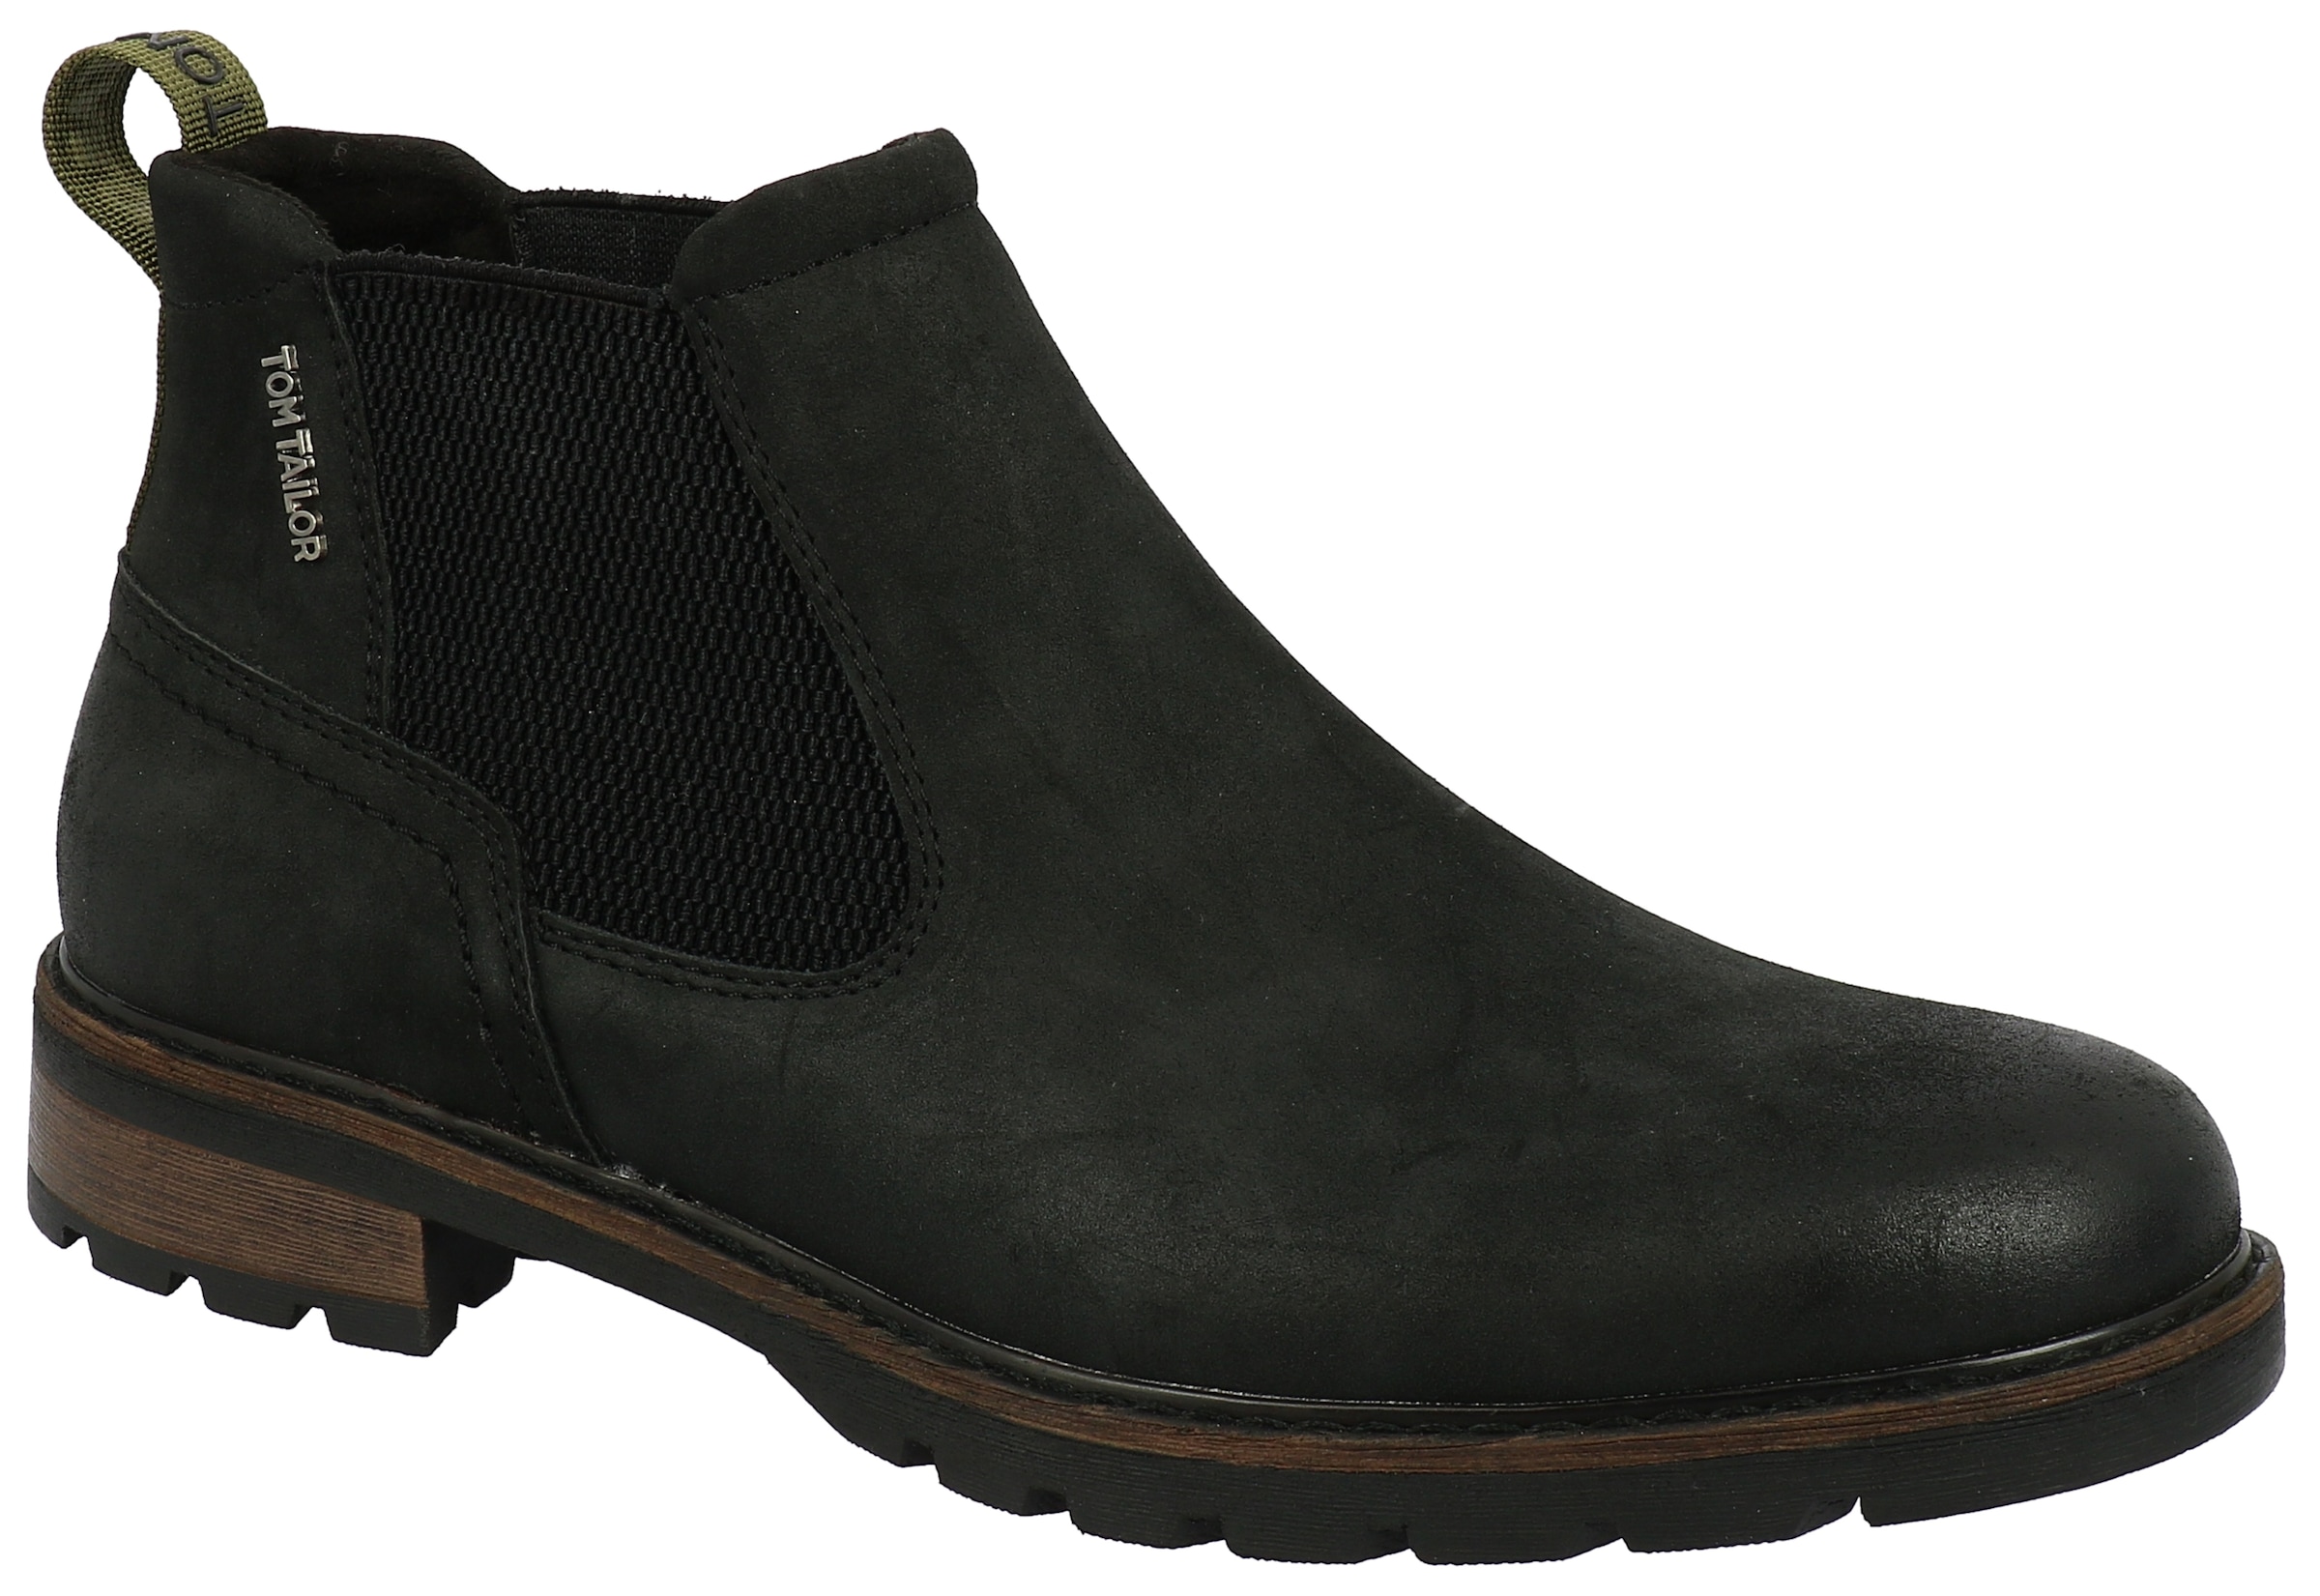 Tom Tailor Schuhe schwarz online kaufen » I'm walking